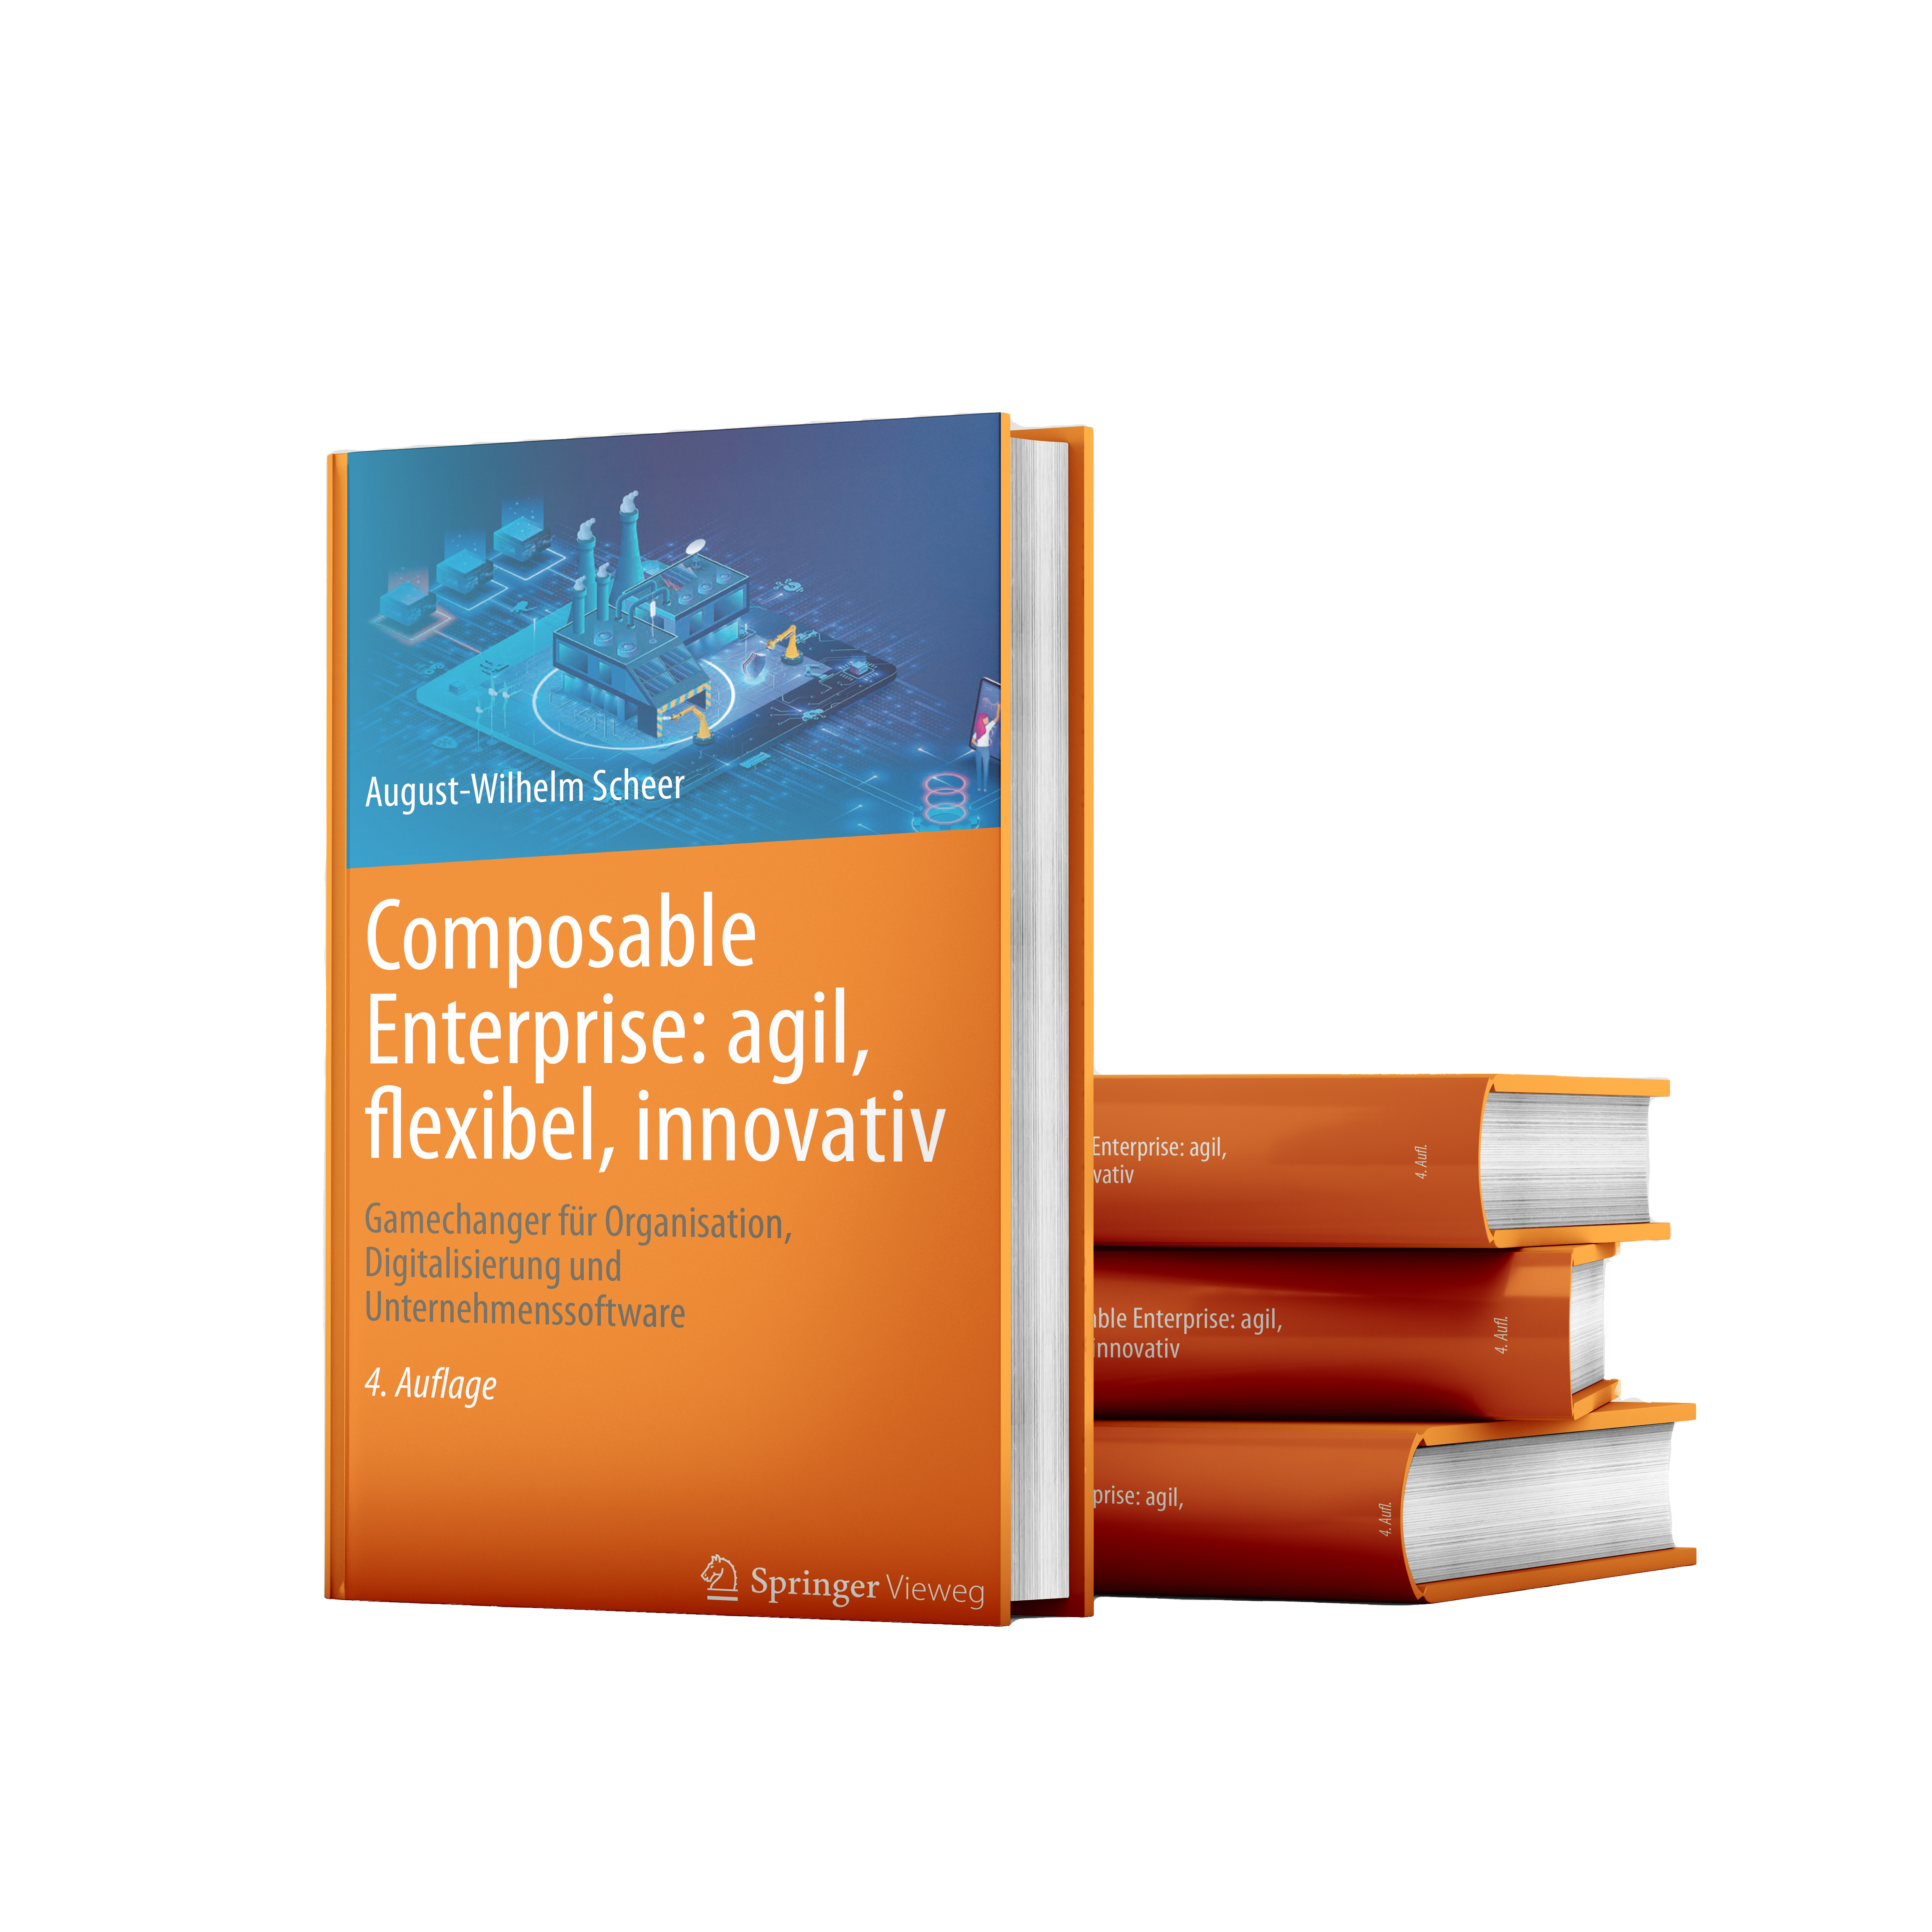 Buch von Prof. Dr. August-Wilhelm Scheer zum Thema Composable Enterprise (Springer Verlag)